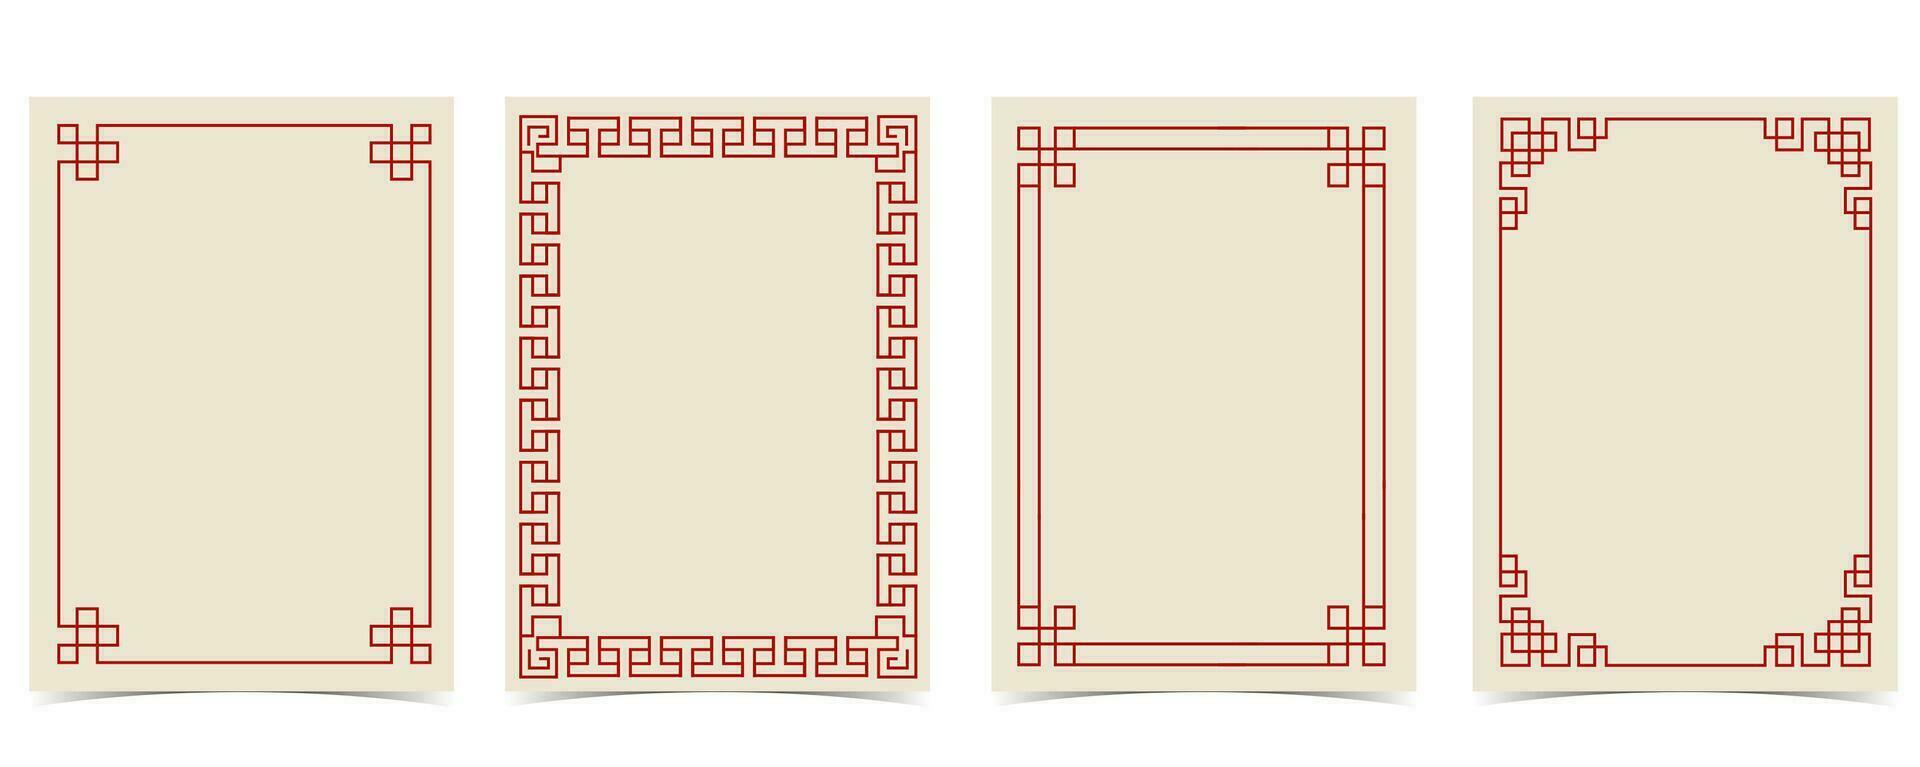 Chinese nieuw jaar achtergrond met frame, rand.bewerkbaar vector illustratie voor ansichtkaart,a4 grootte